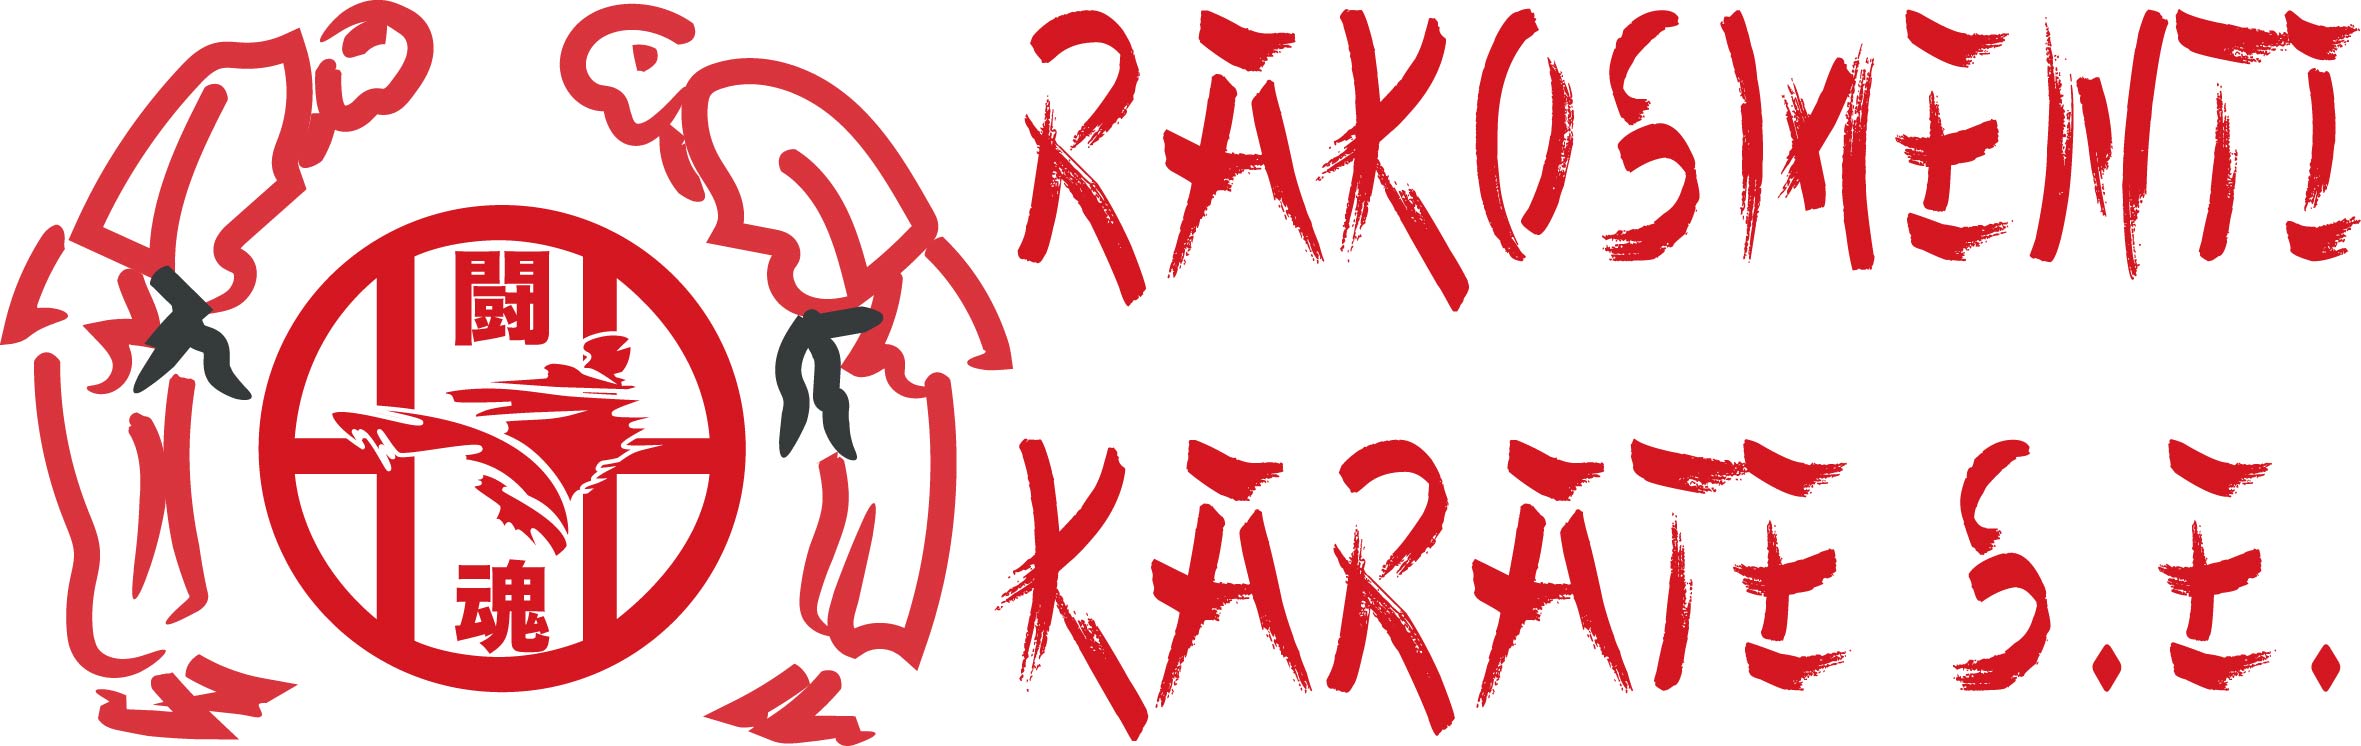 Rákosmenti Karate Sportegyesület - Rákosmente karate szakértője